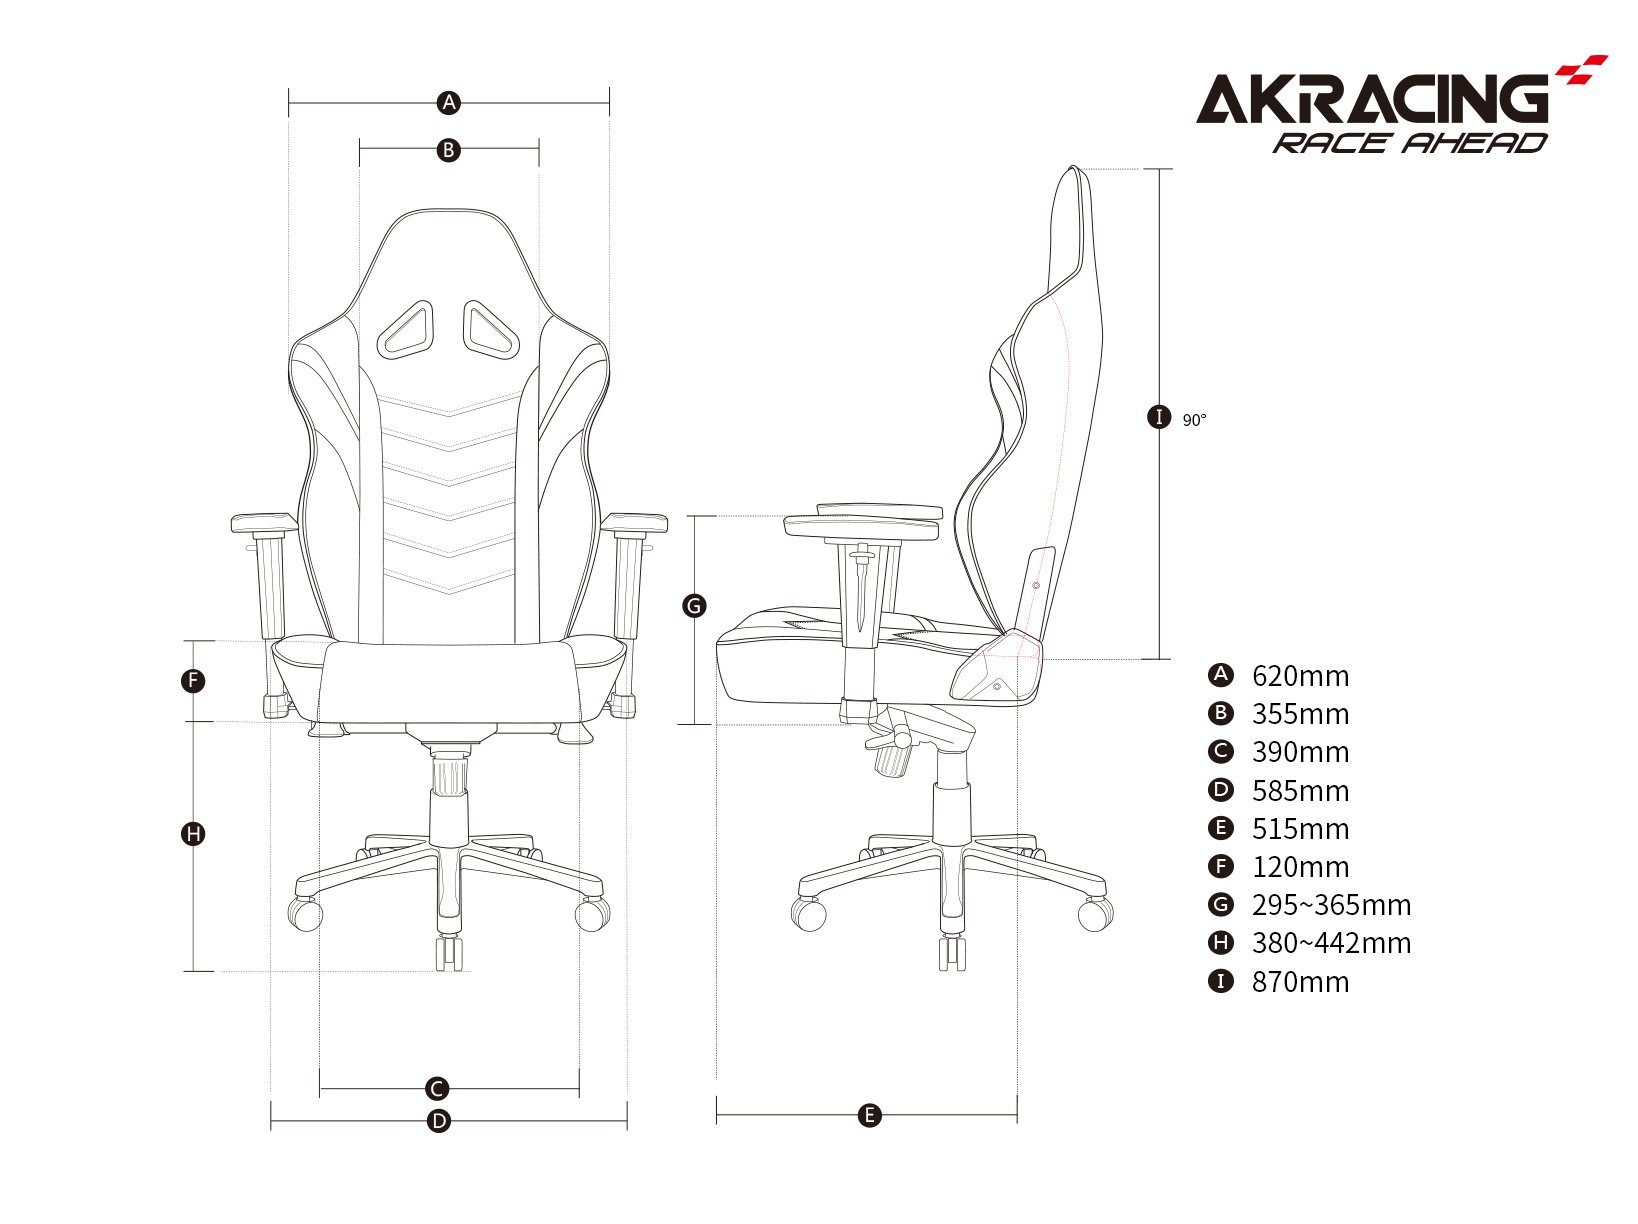 ergonomisch, für höhenverstellbar schwere Kunstleder, hochwertiges "AKRACING Bürostuhl AKRacing Personen Max" weiß Gaming-Stuhl und große Master